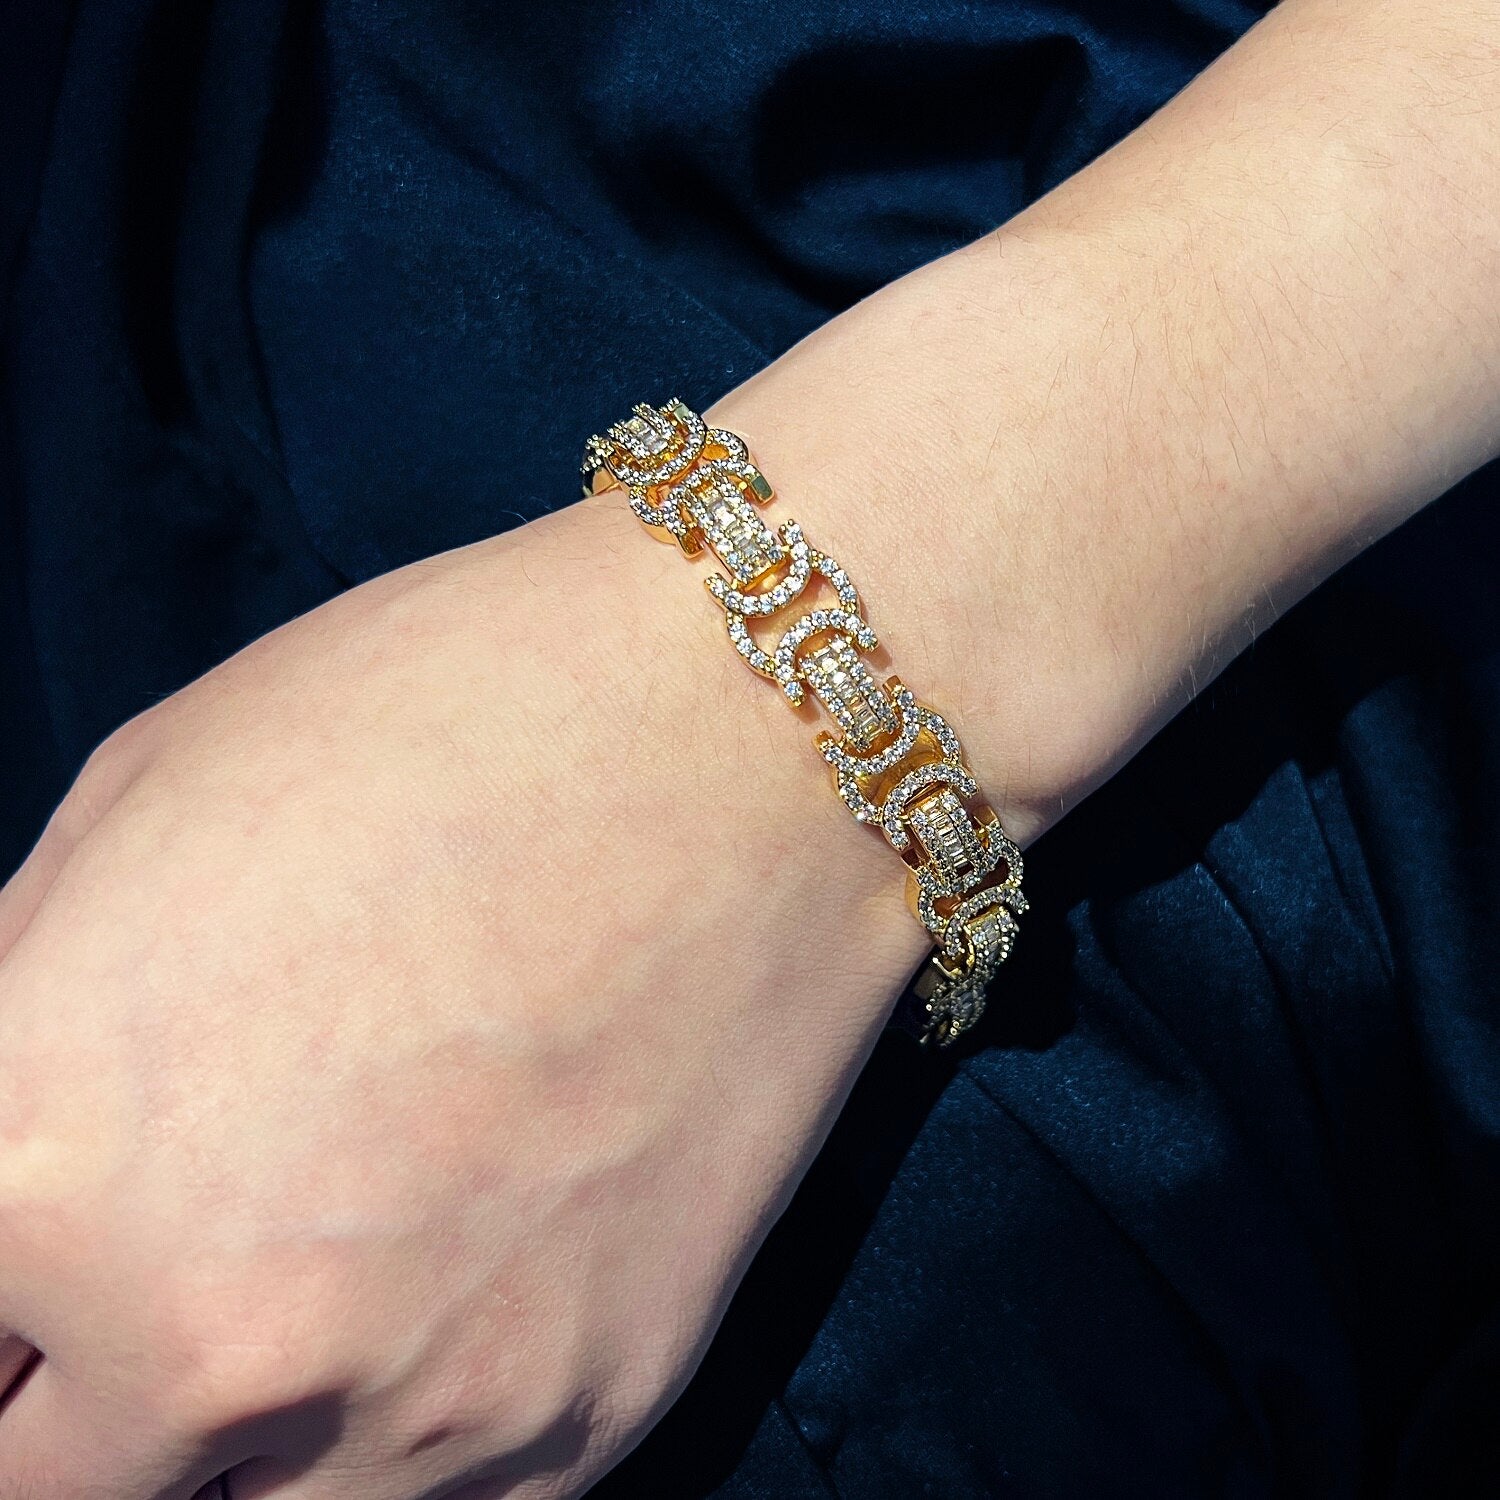 13mm | Byzantine Bracelet | Gold Byzantine Bracelet | Byzantine Gold Bracelet